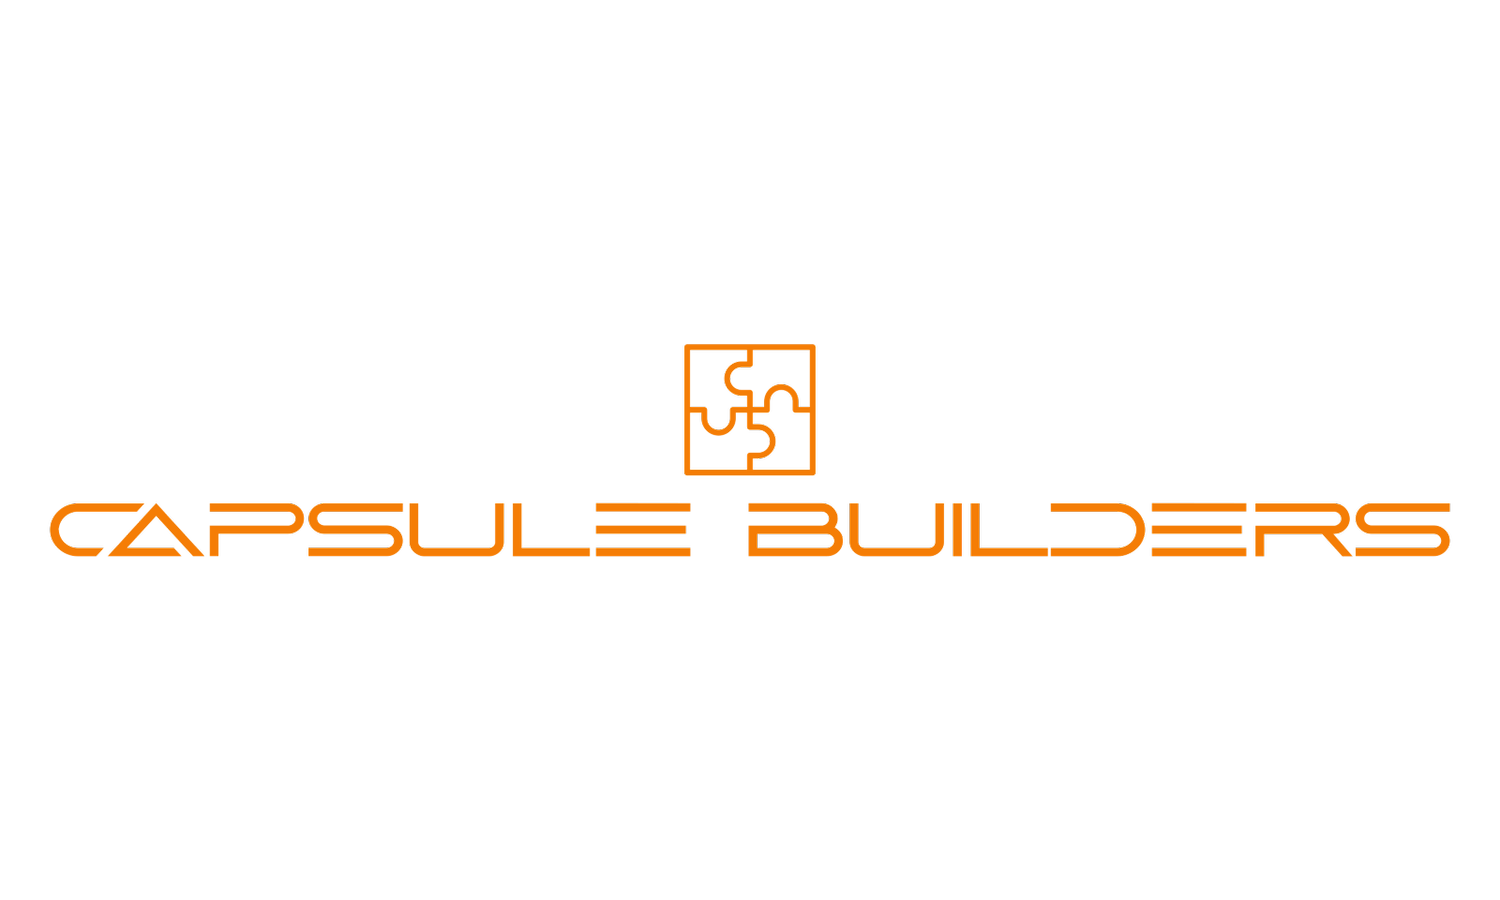 Capsule Builders